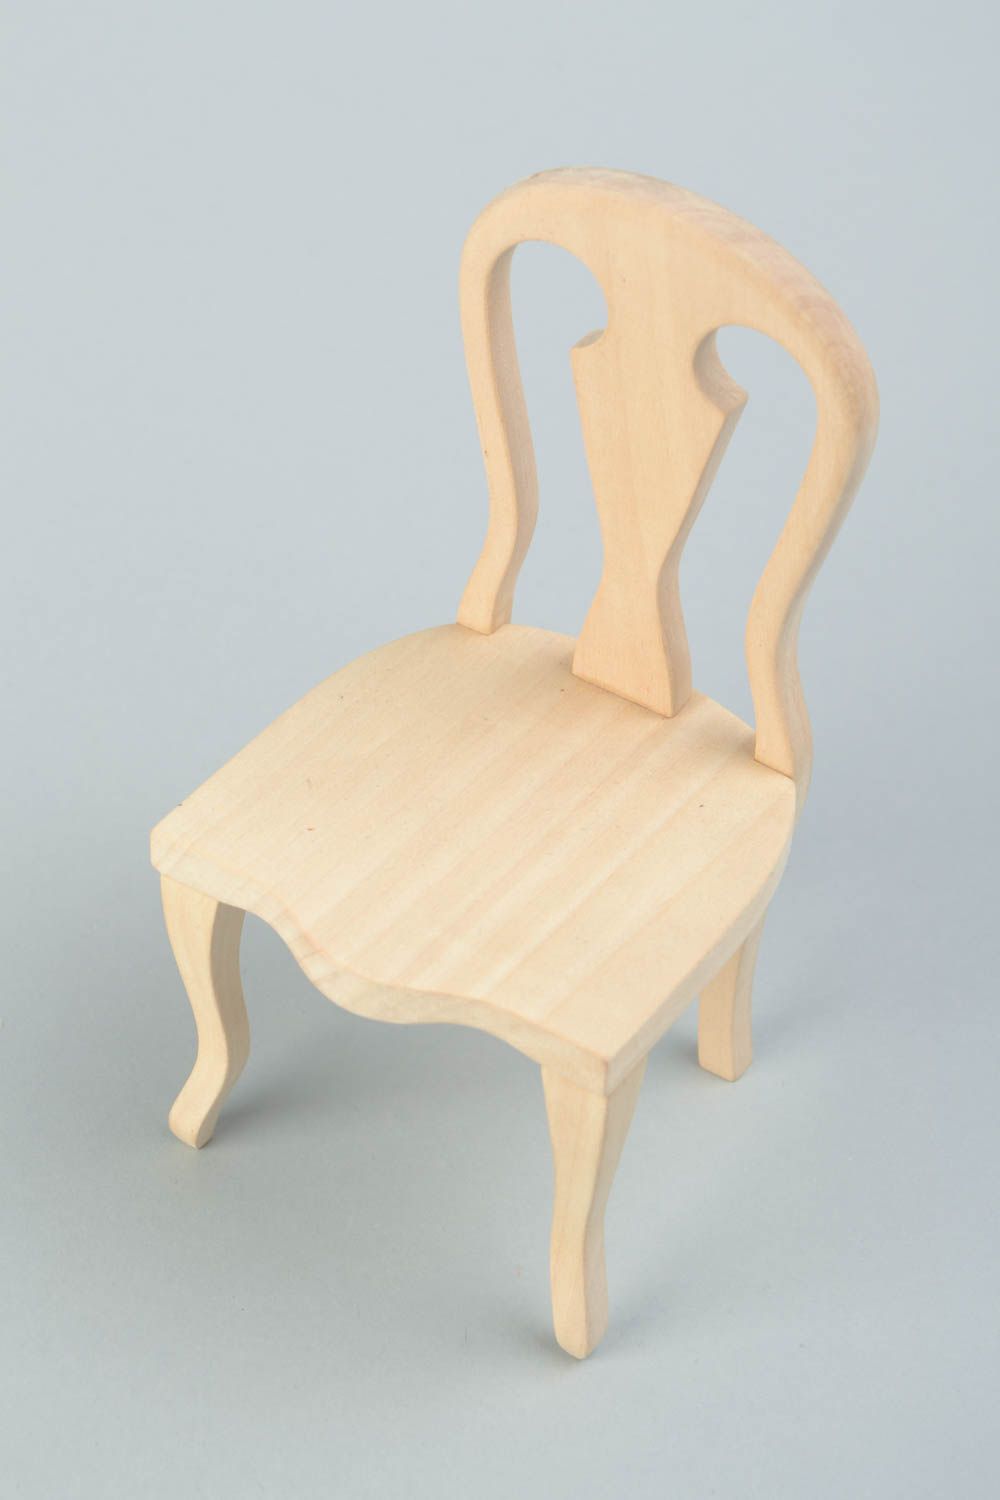 Деревянный стул для куклы заготовка под роспись или декупаж ручной работы фото 1